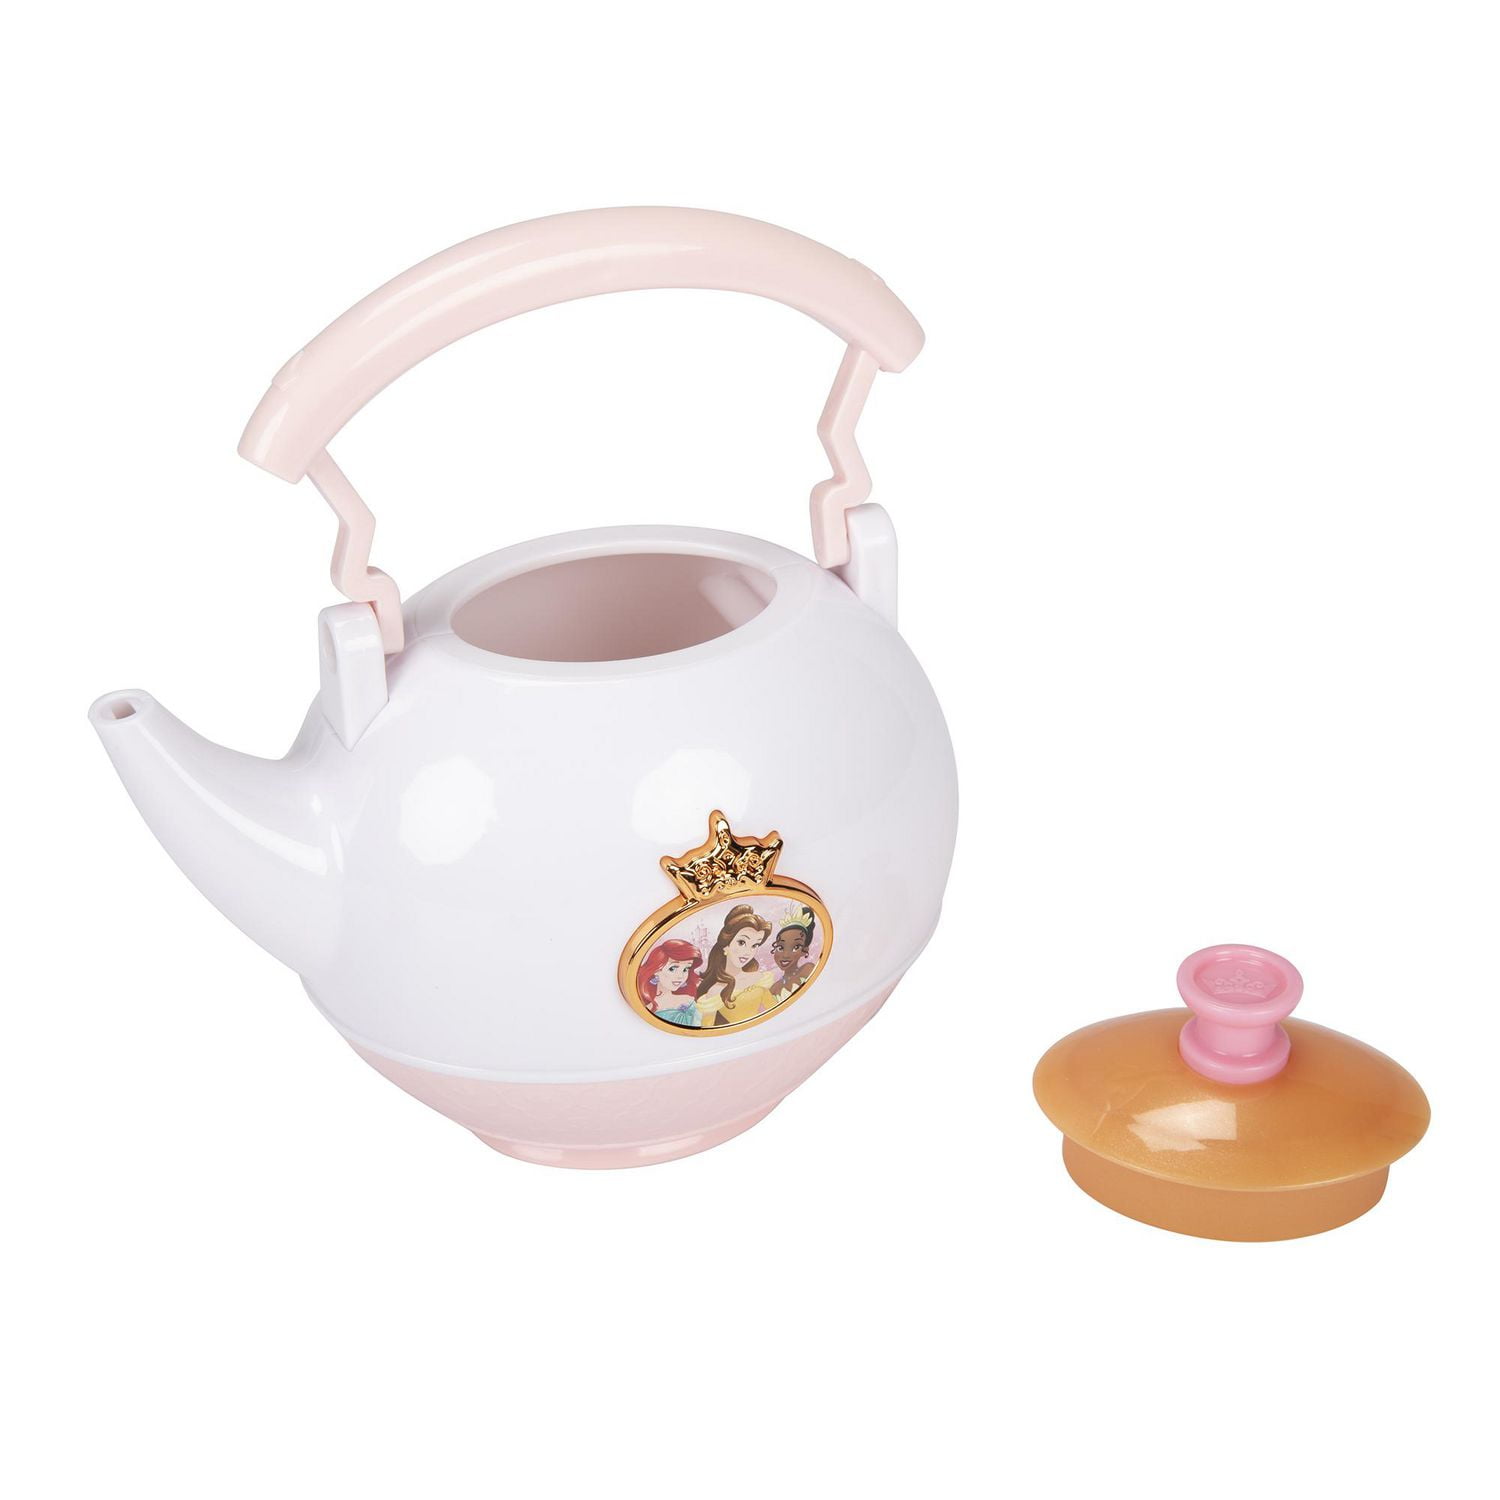 Disney Princess Style Collection Tea Set, Elegant Tea for Two